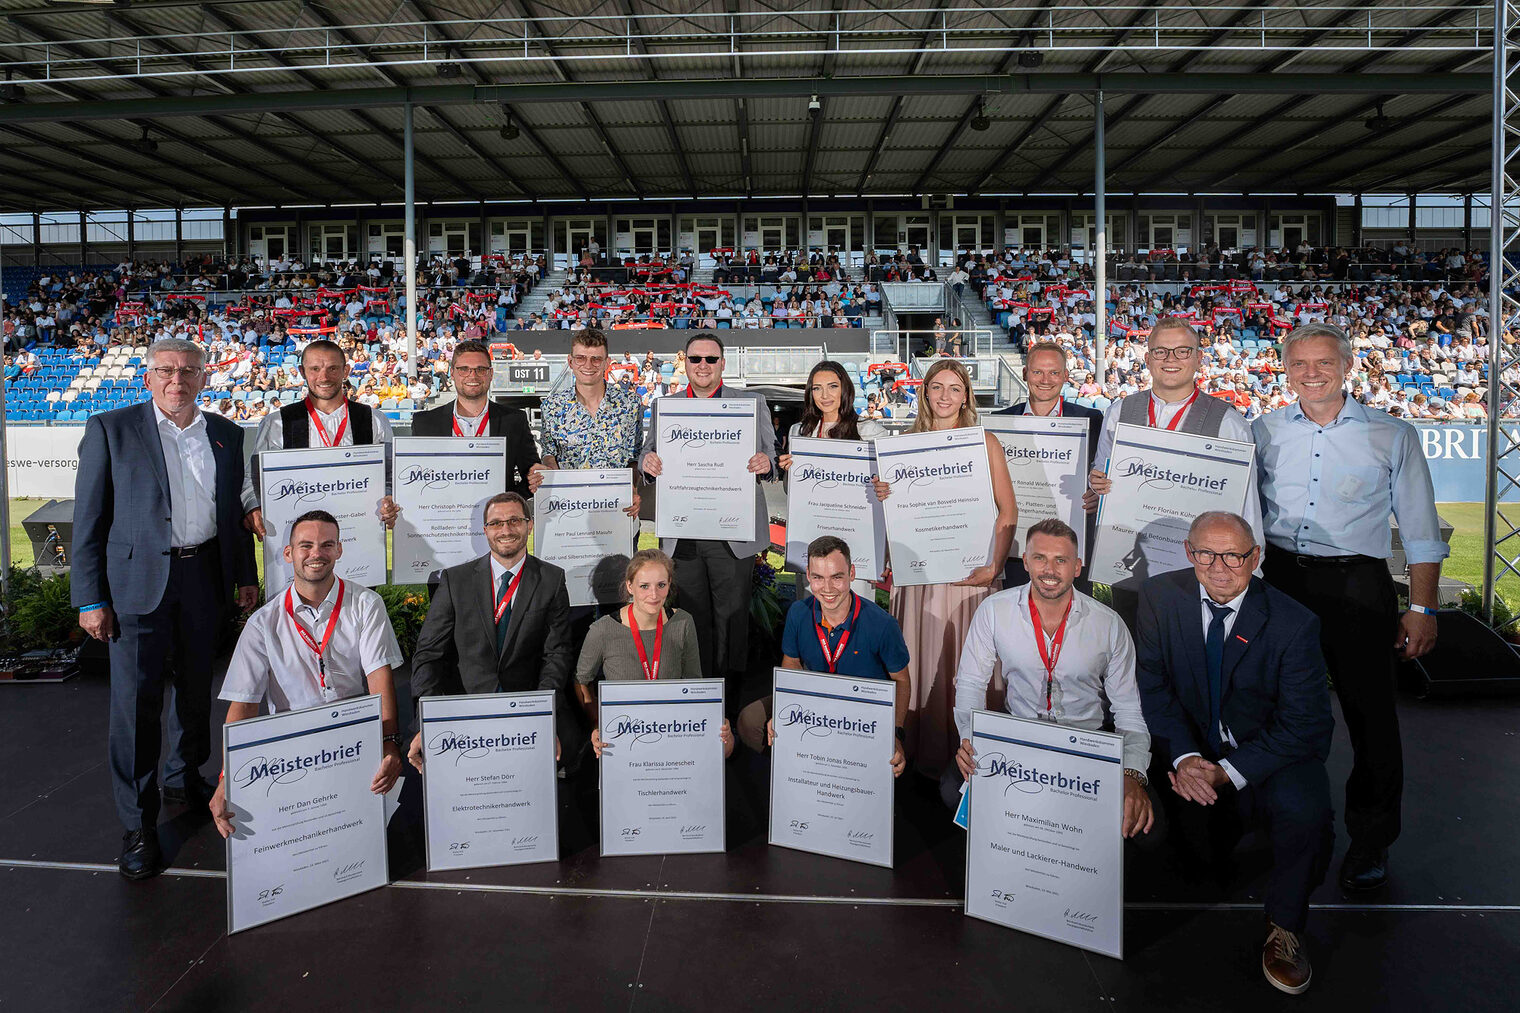 Gruppenbild der Jahrgangsbesten Meister 2021auf der Meisterfeier im Juli 2022 in der BRITA Arena auf der Bühne, stellvertretend für alle Meister.